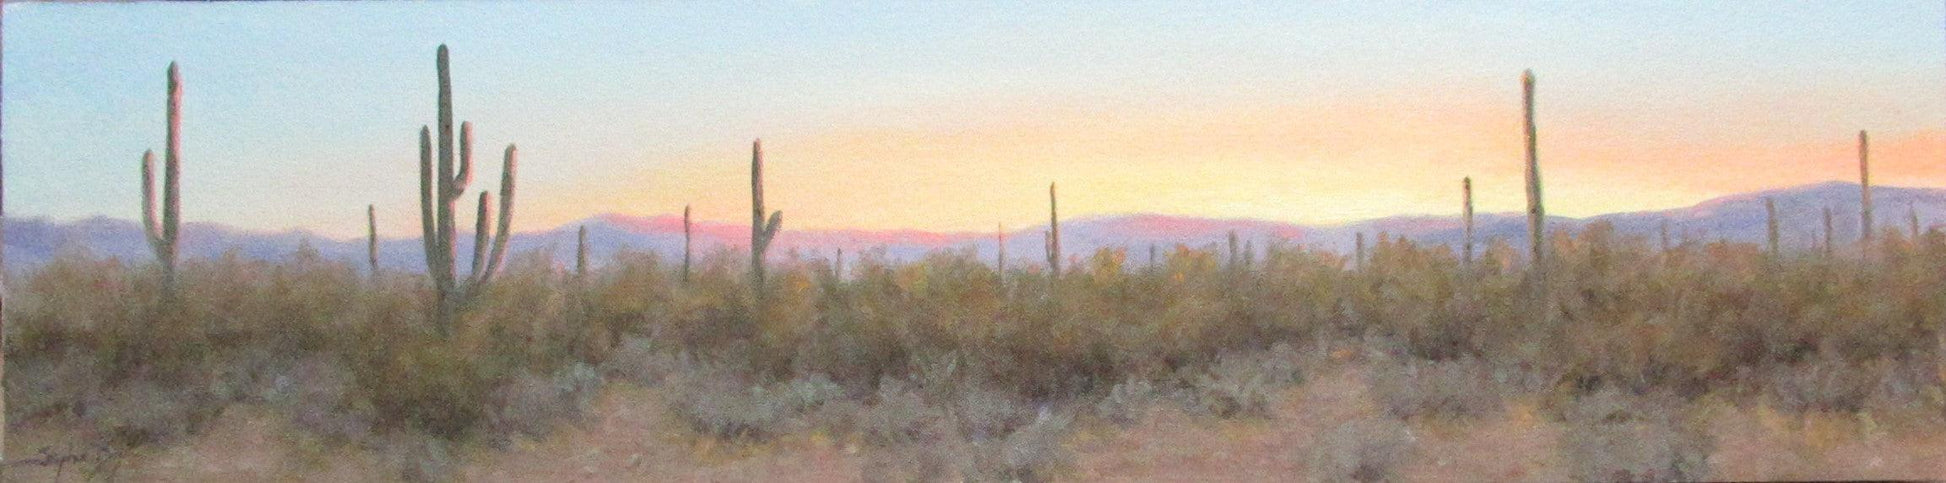 Desert Sunset Moment-Painting-Stephen Day-Sorrel Sky Gallery